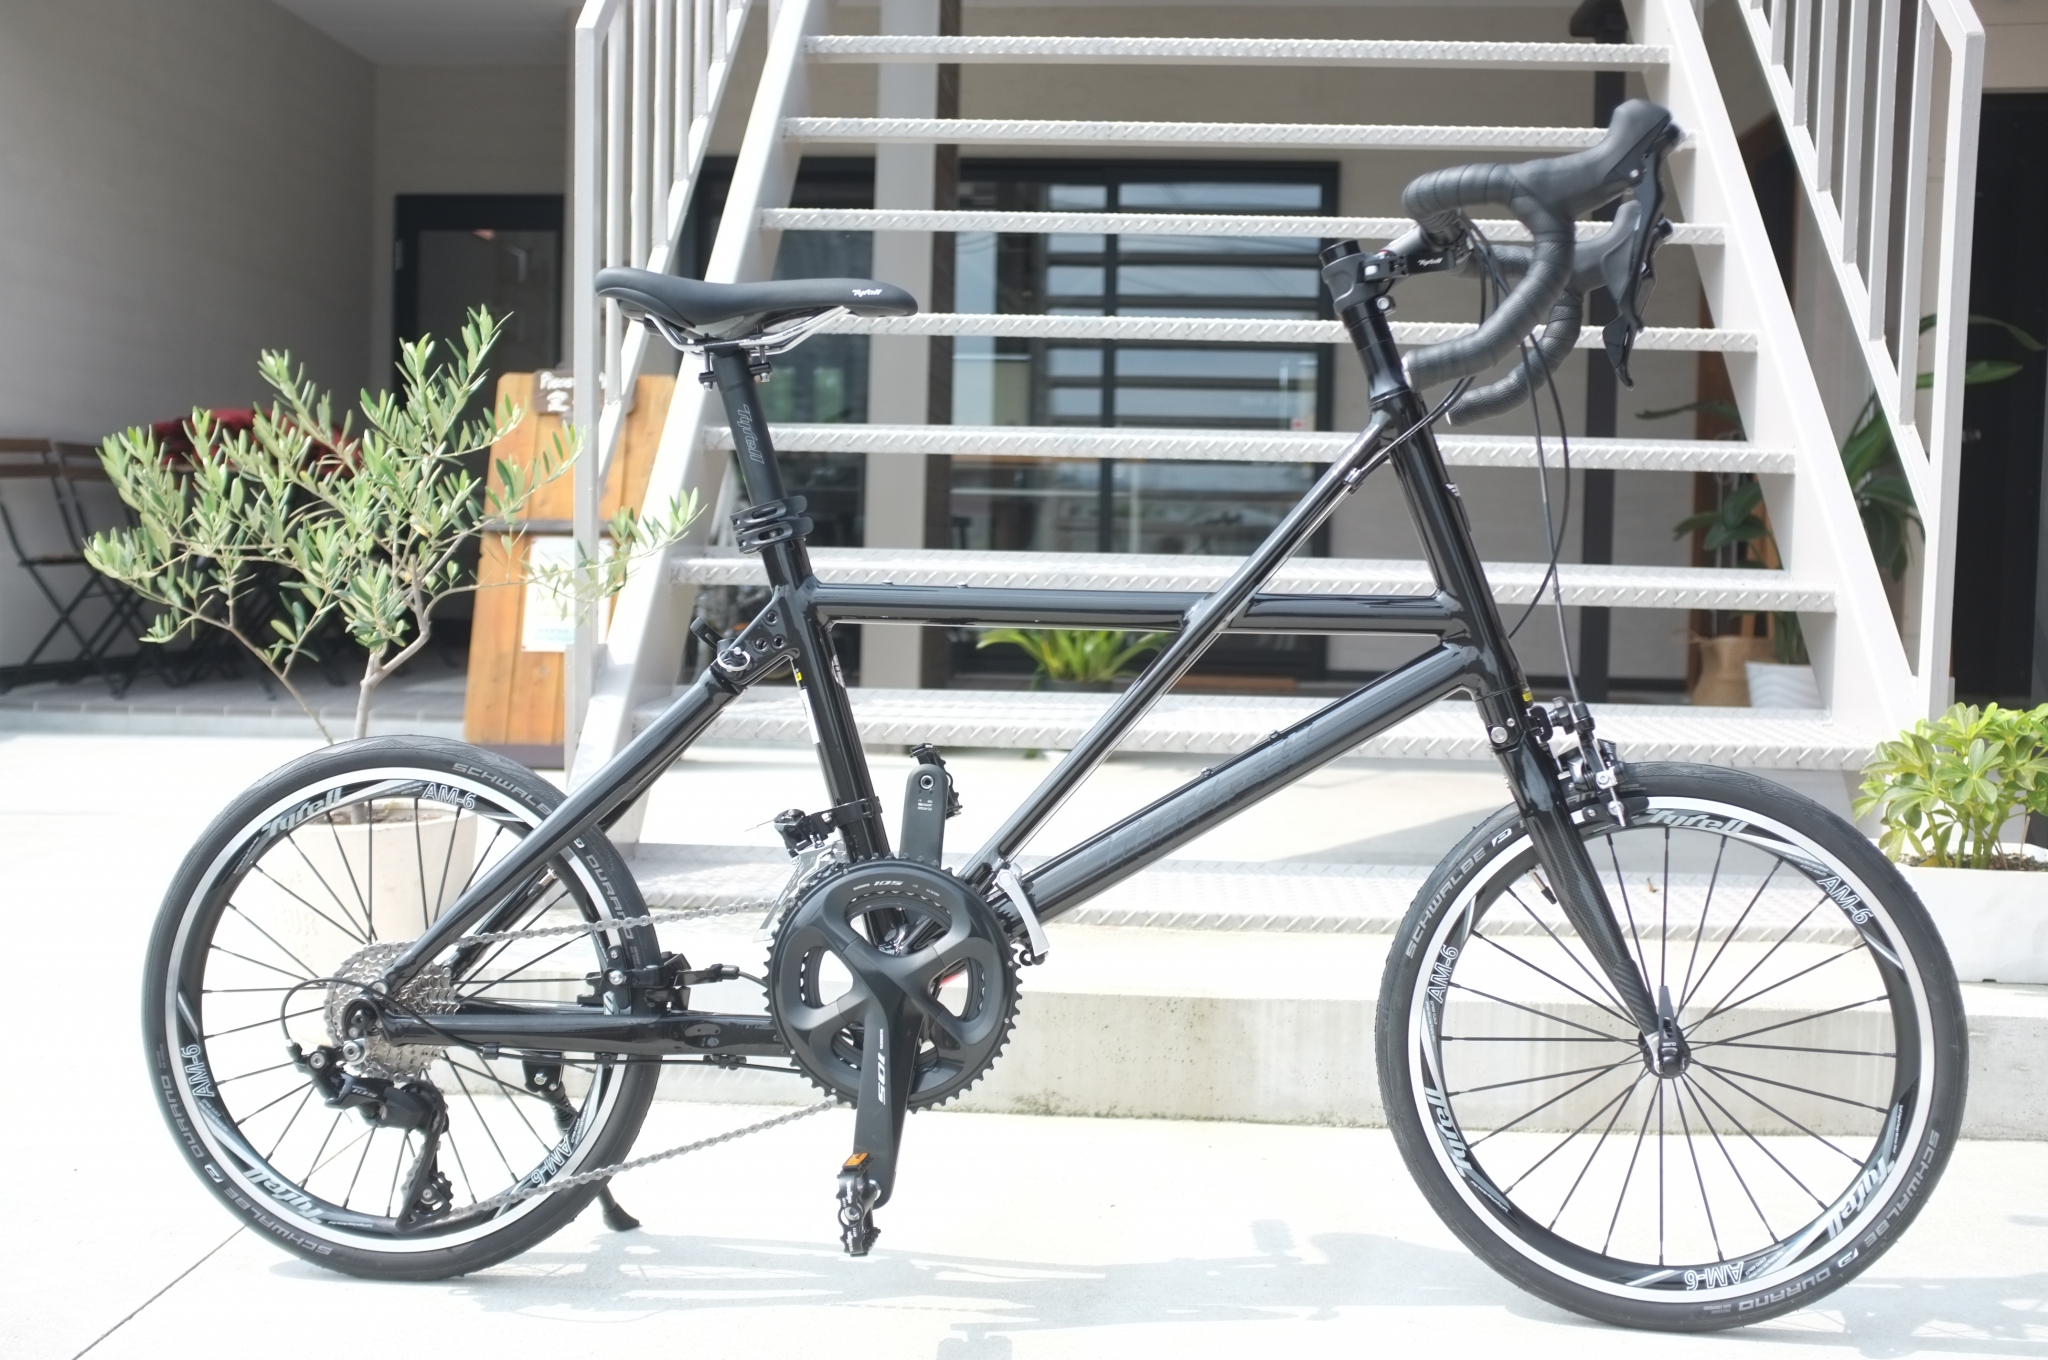 スポーツバイクを始める♪ -Tyrell FX納車- – cyclemark サイクルマーク